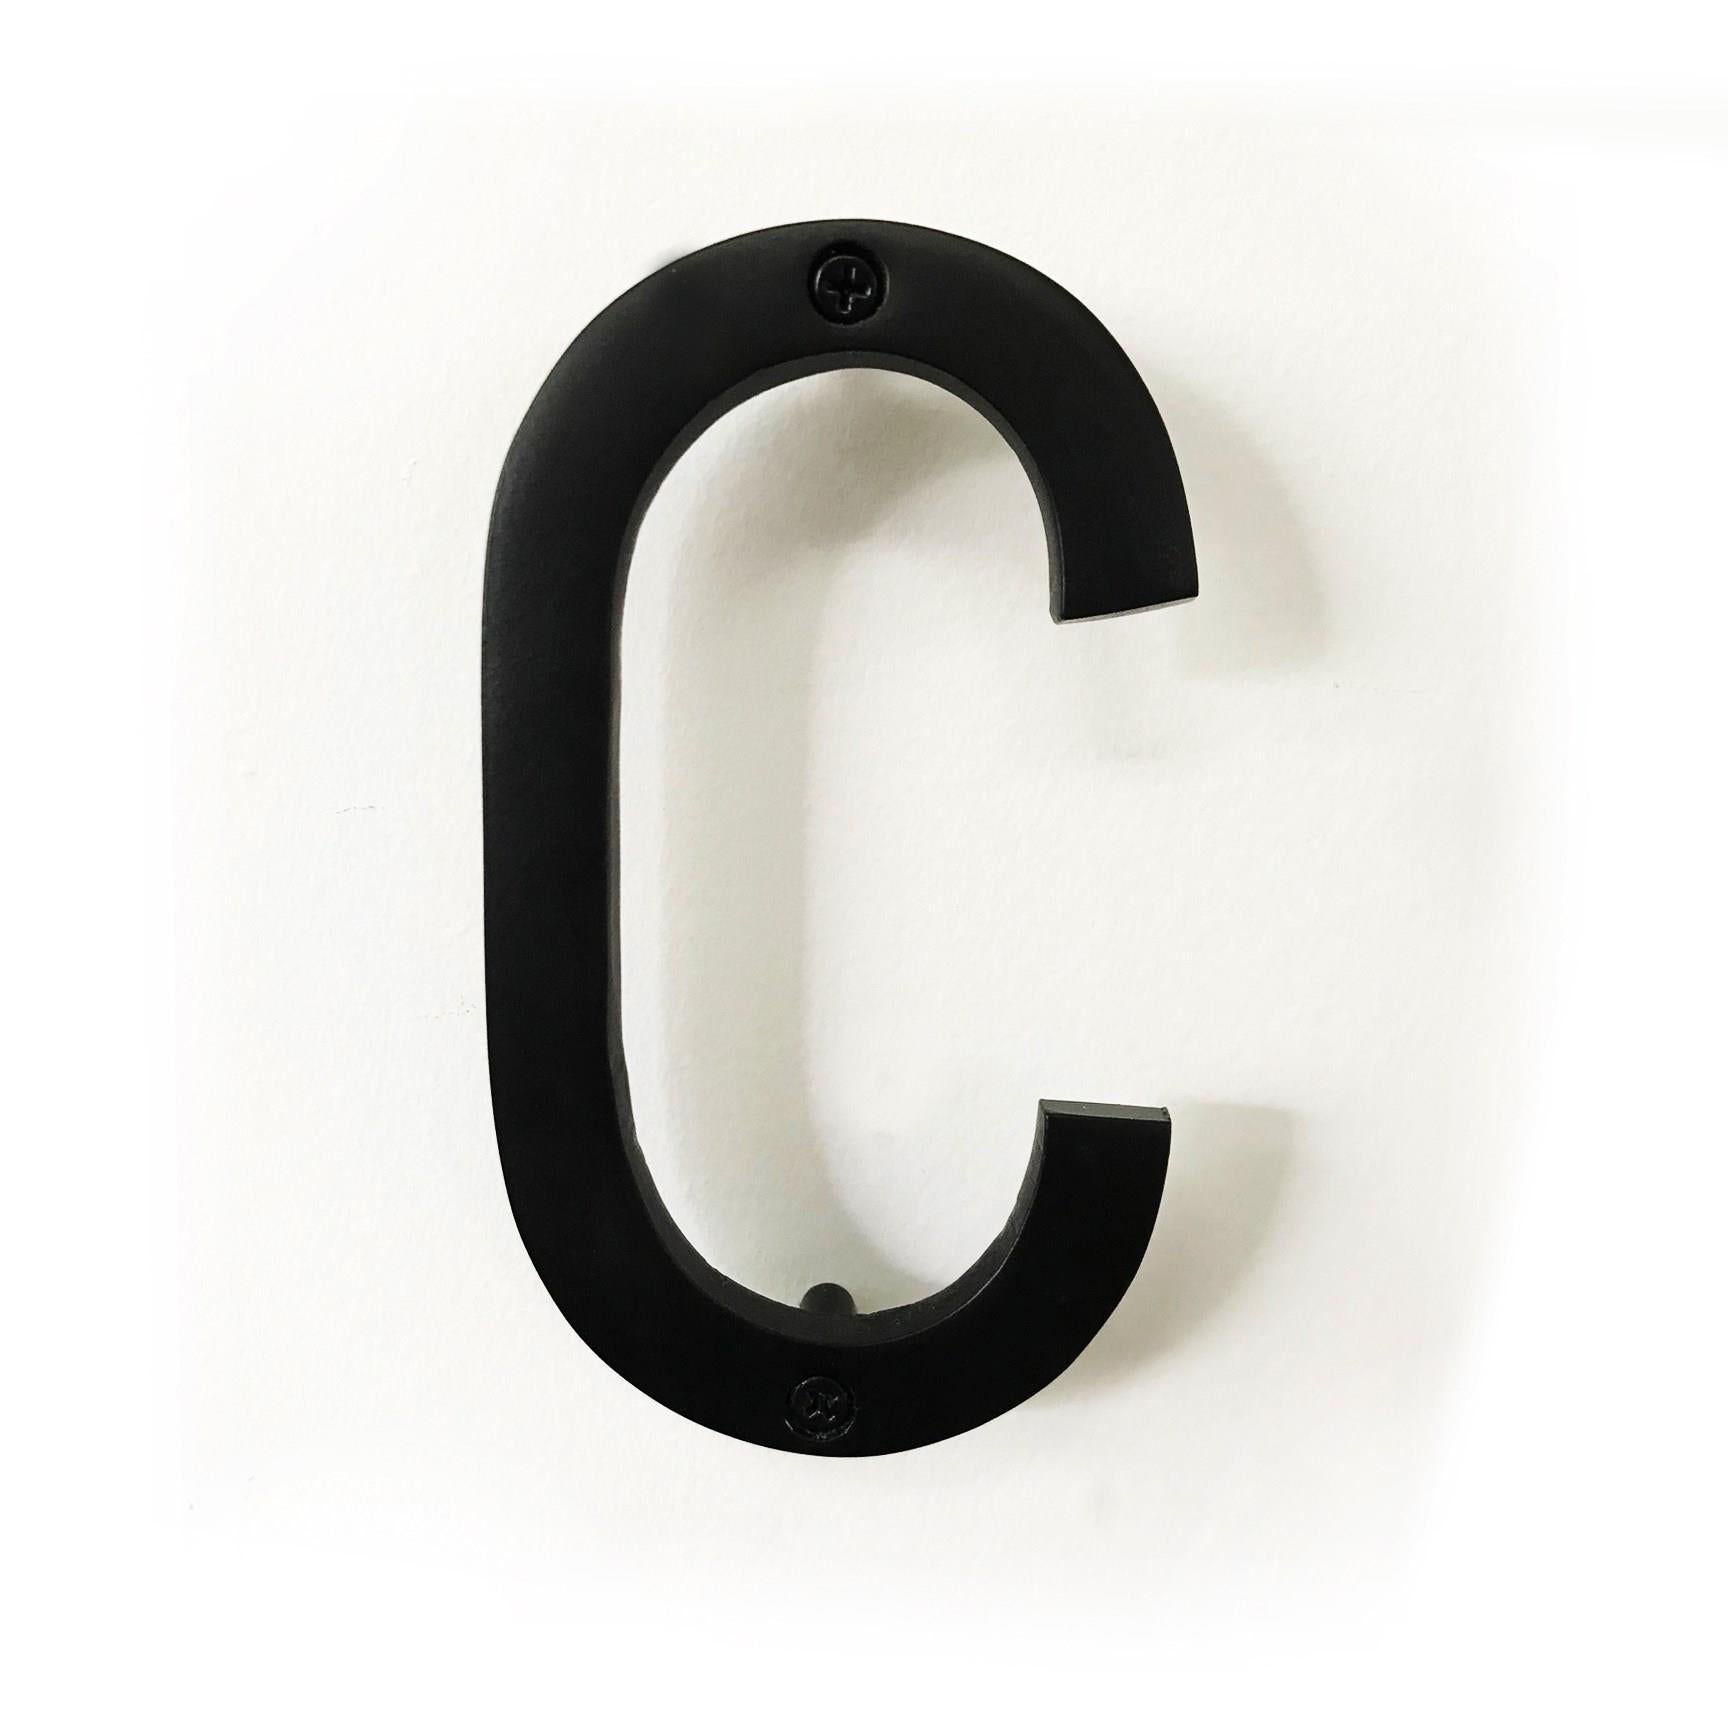 House Letter 'C' - Black Aluminum